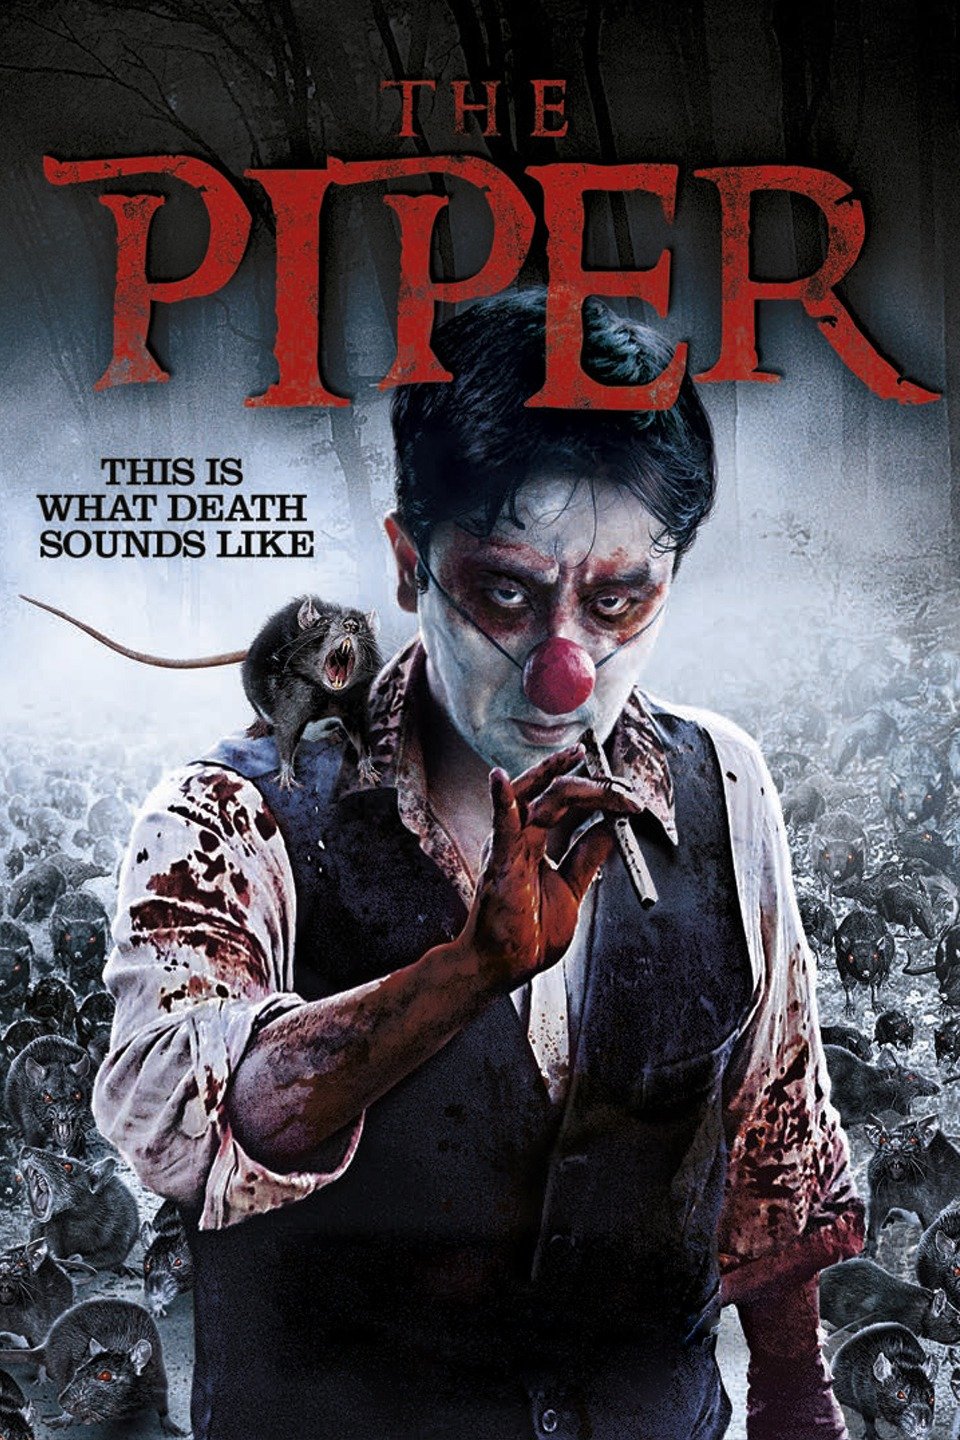 The Piper (2015)